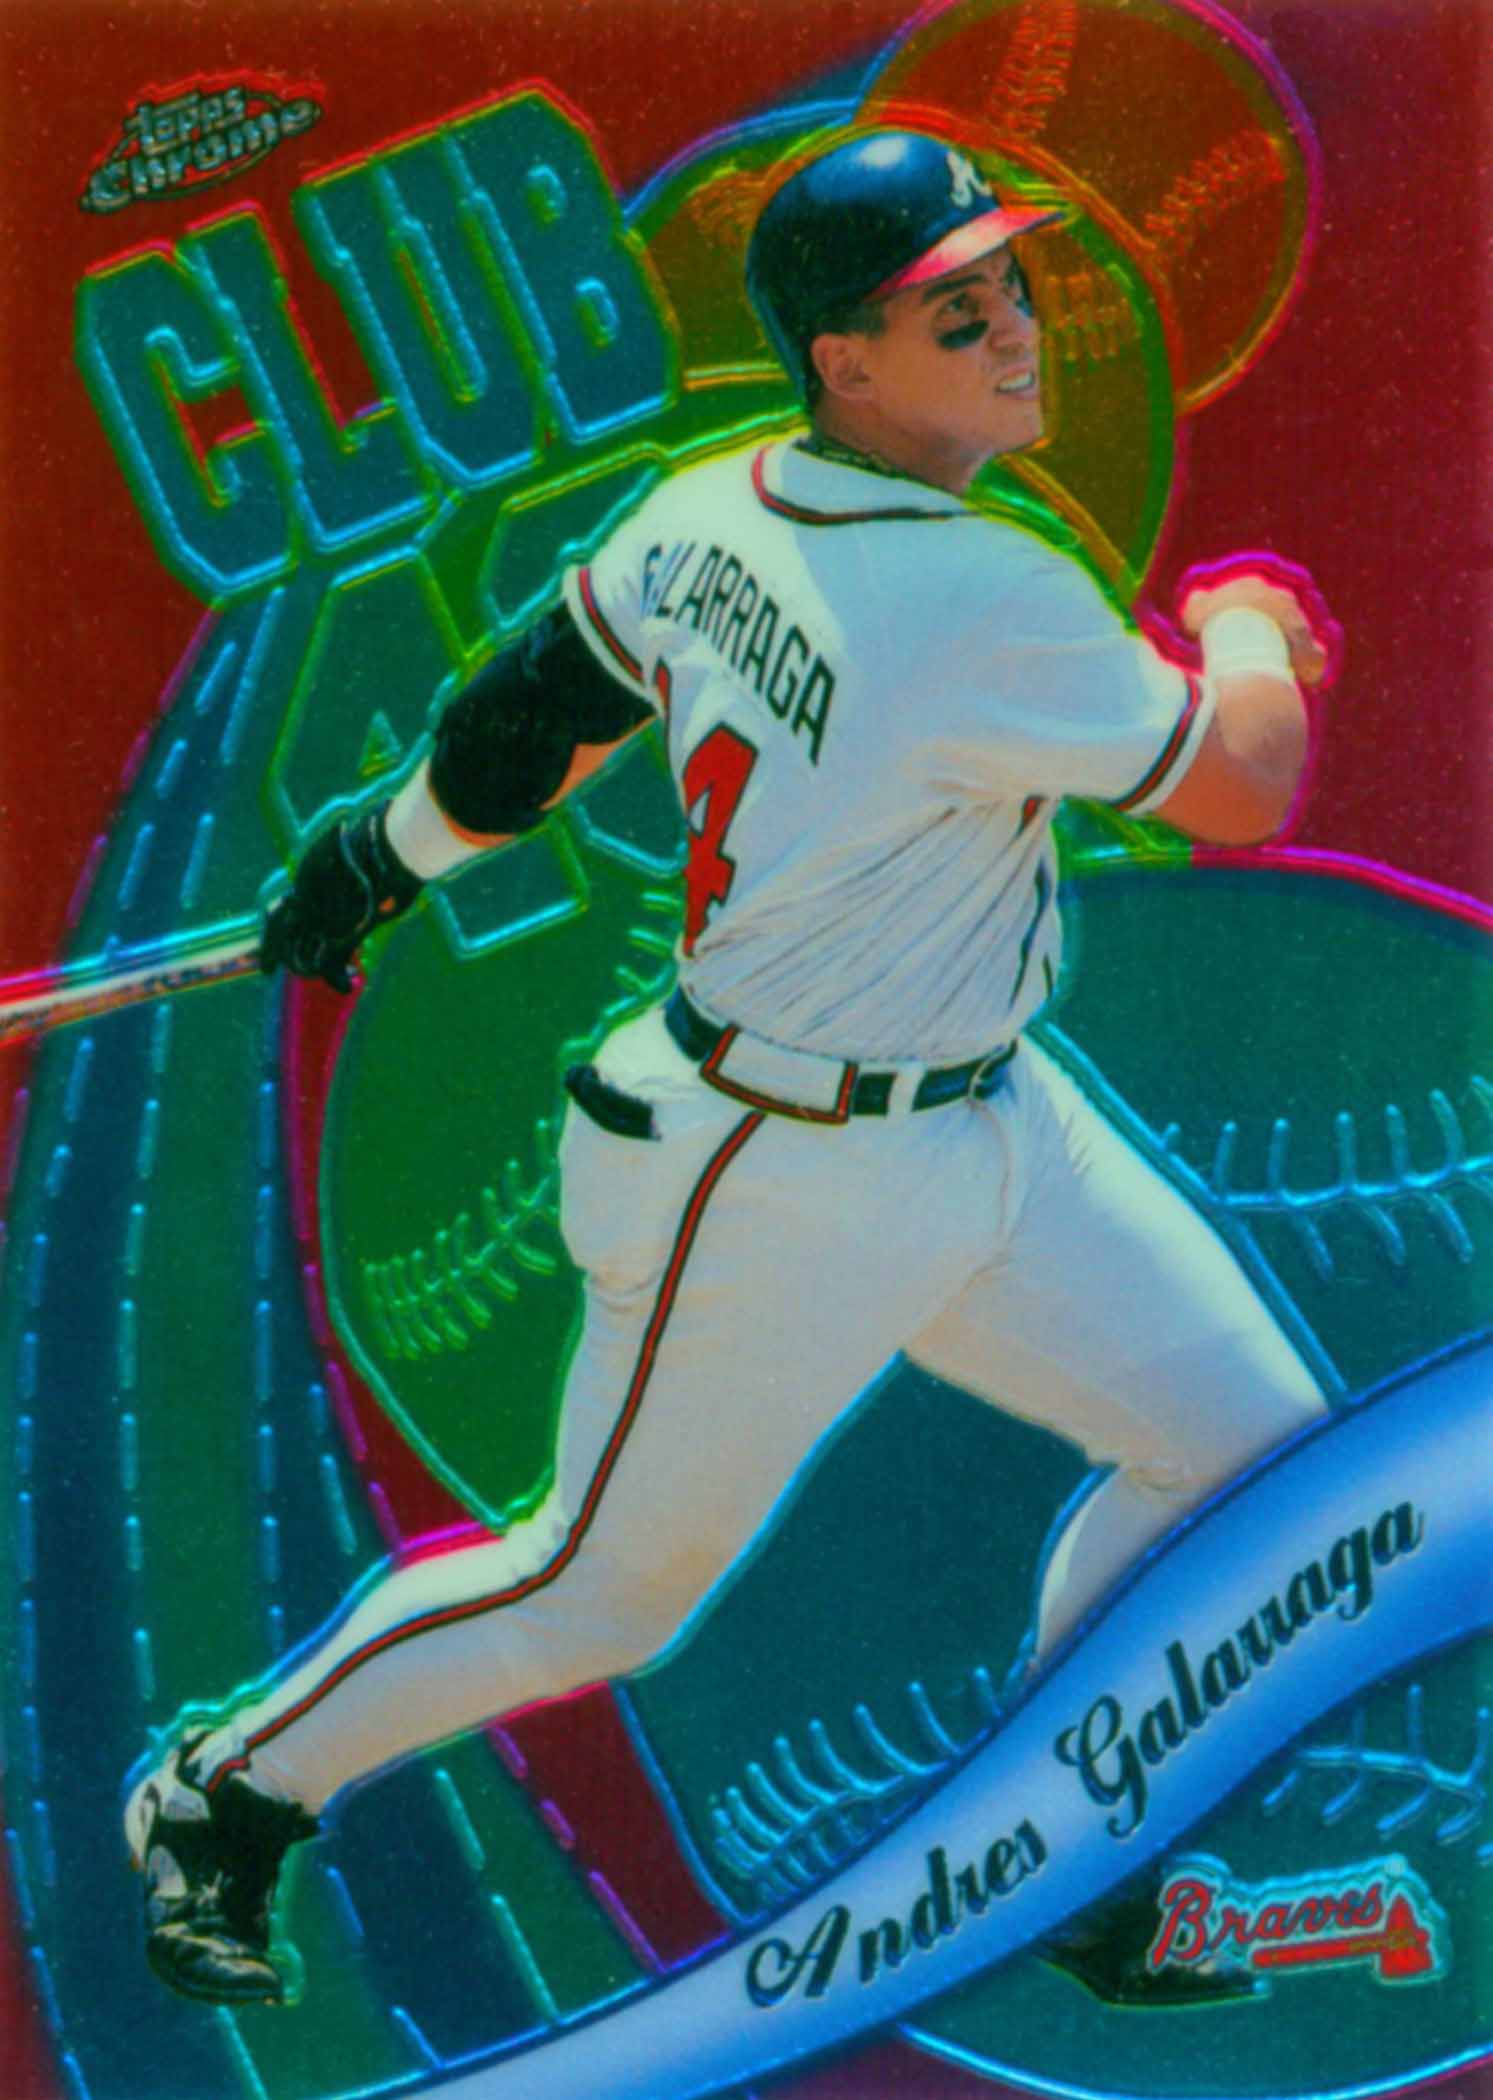 Andres Galarraga 1985 - 2004  Baseball pictures, Baseball, Expos